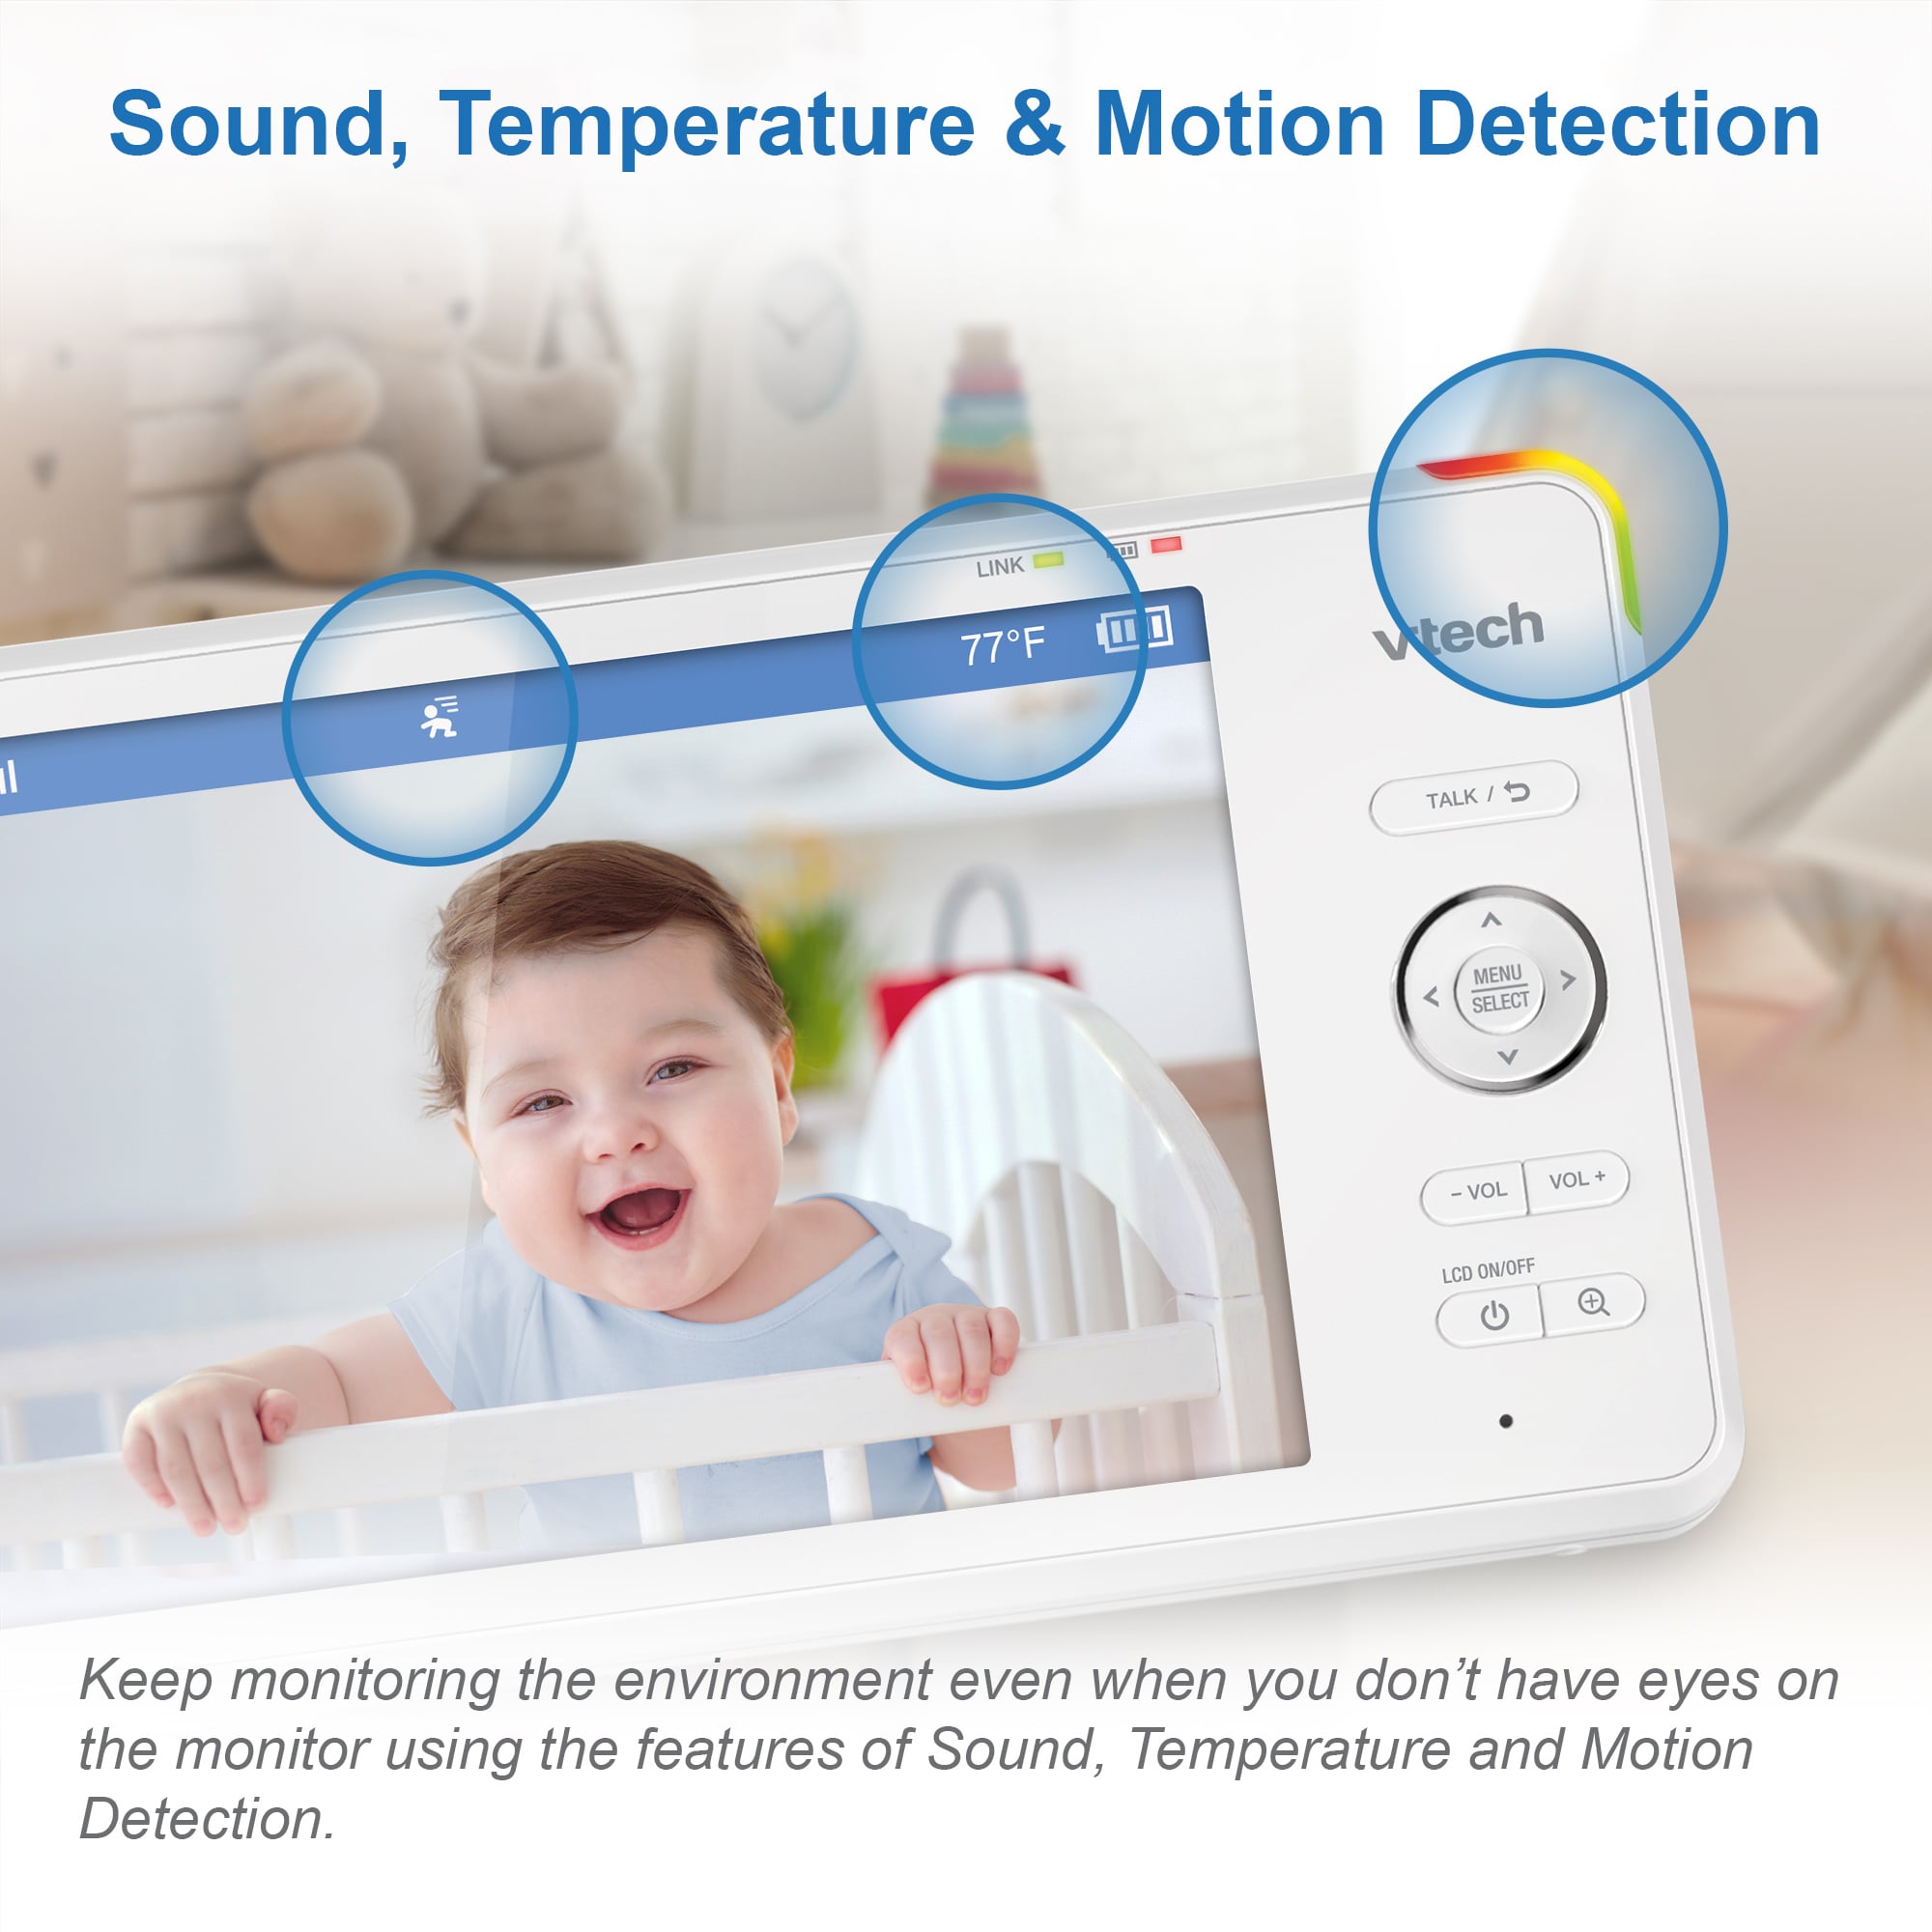 Moniteur bébé avec caméra et audio, 5 720P HD vidéo bébé moniteur